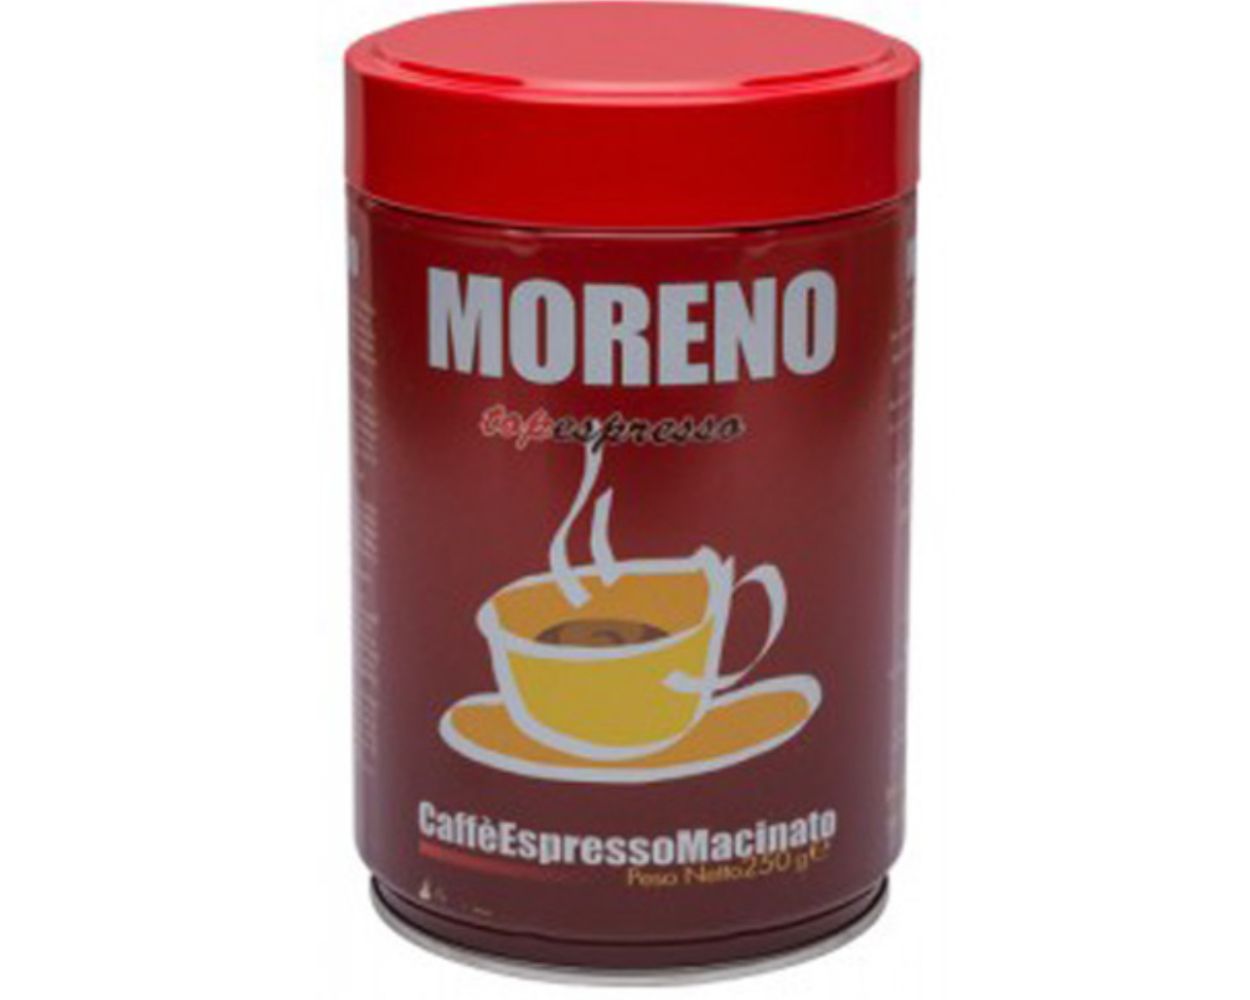 Caffè Moreno Top Espresso gemahlen